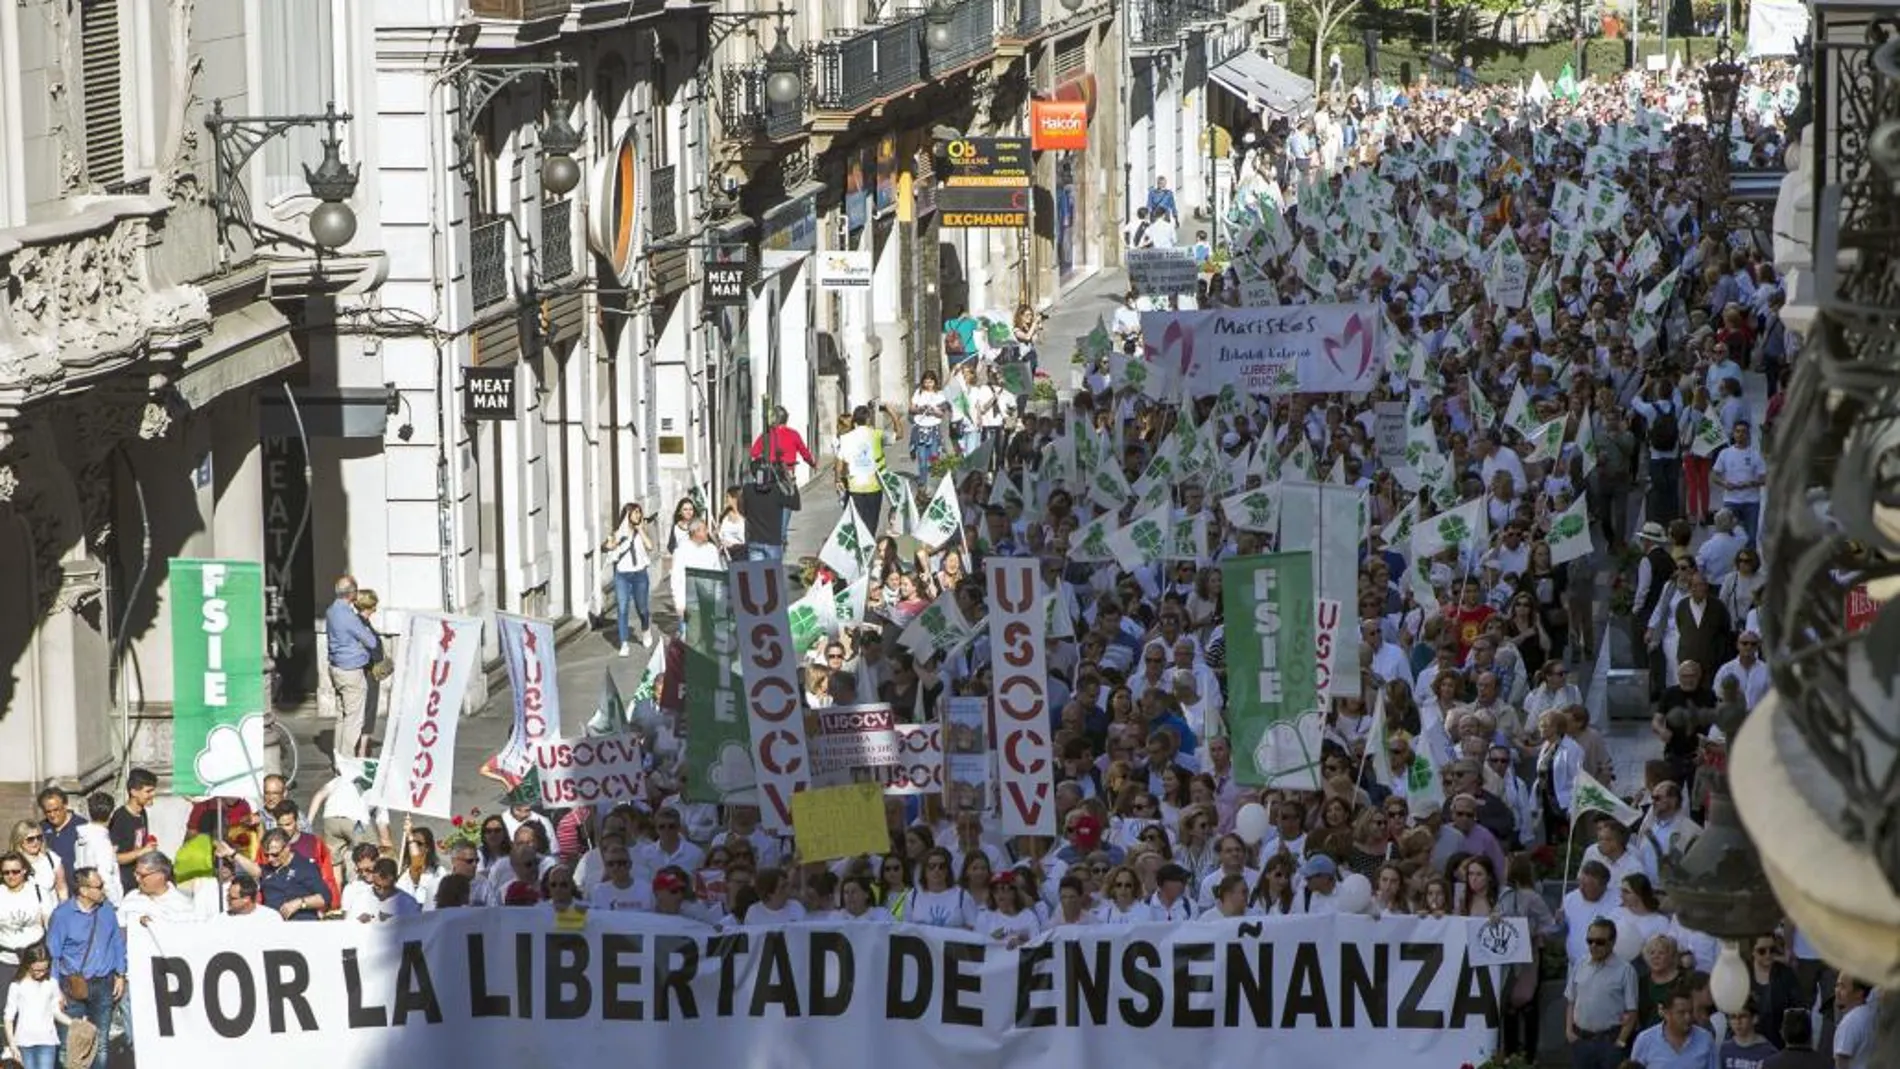 MIles de padres, profesores y alumnos, apoyados por representantes políticos, se lanzaron a la calle para rechazar el decreto contra las conciertos